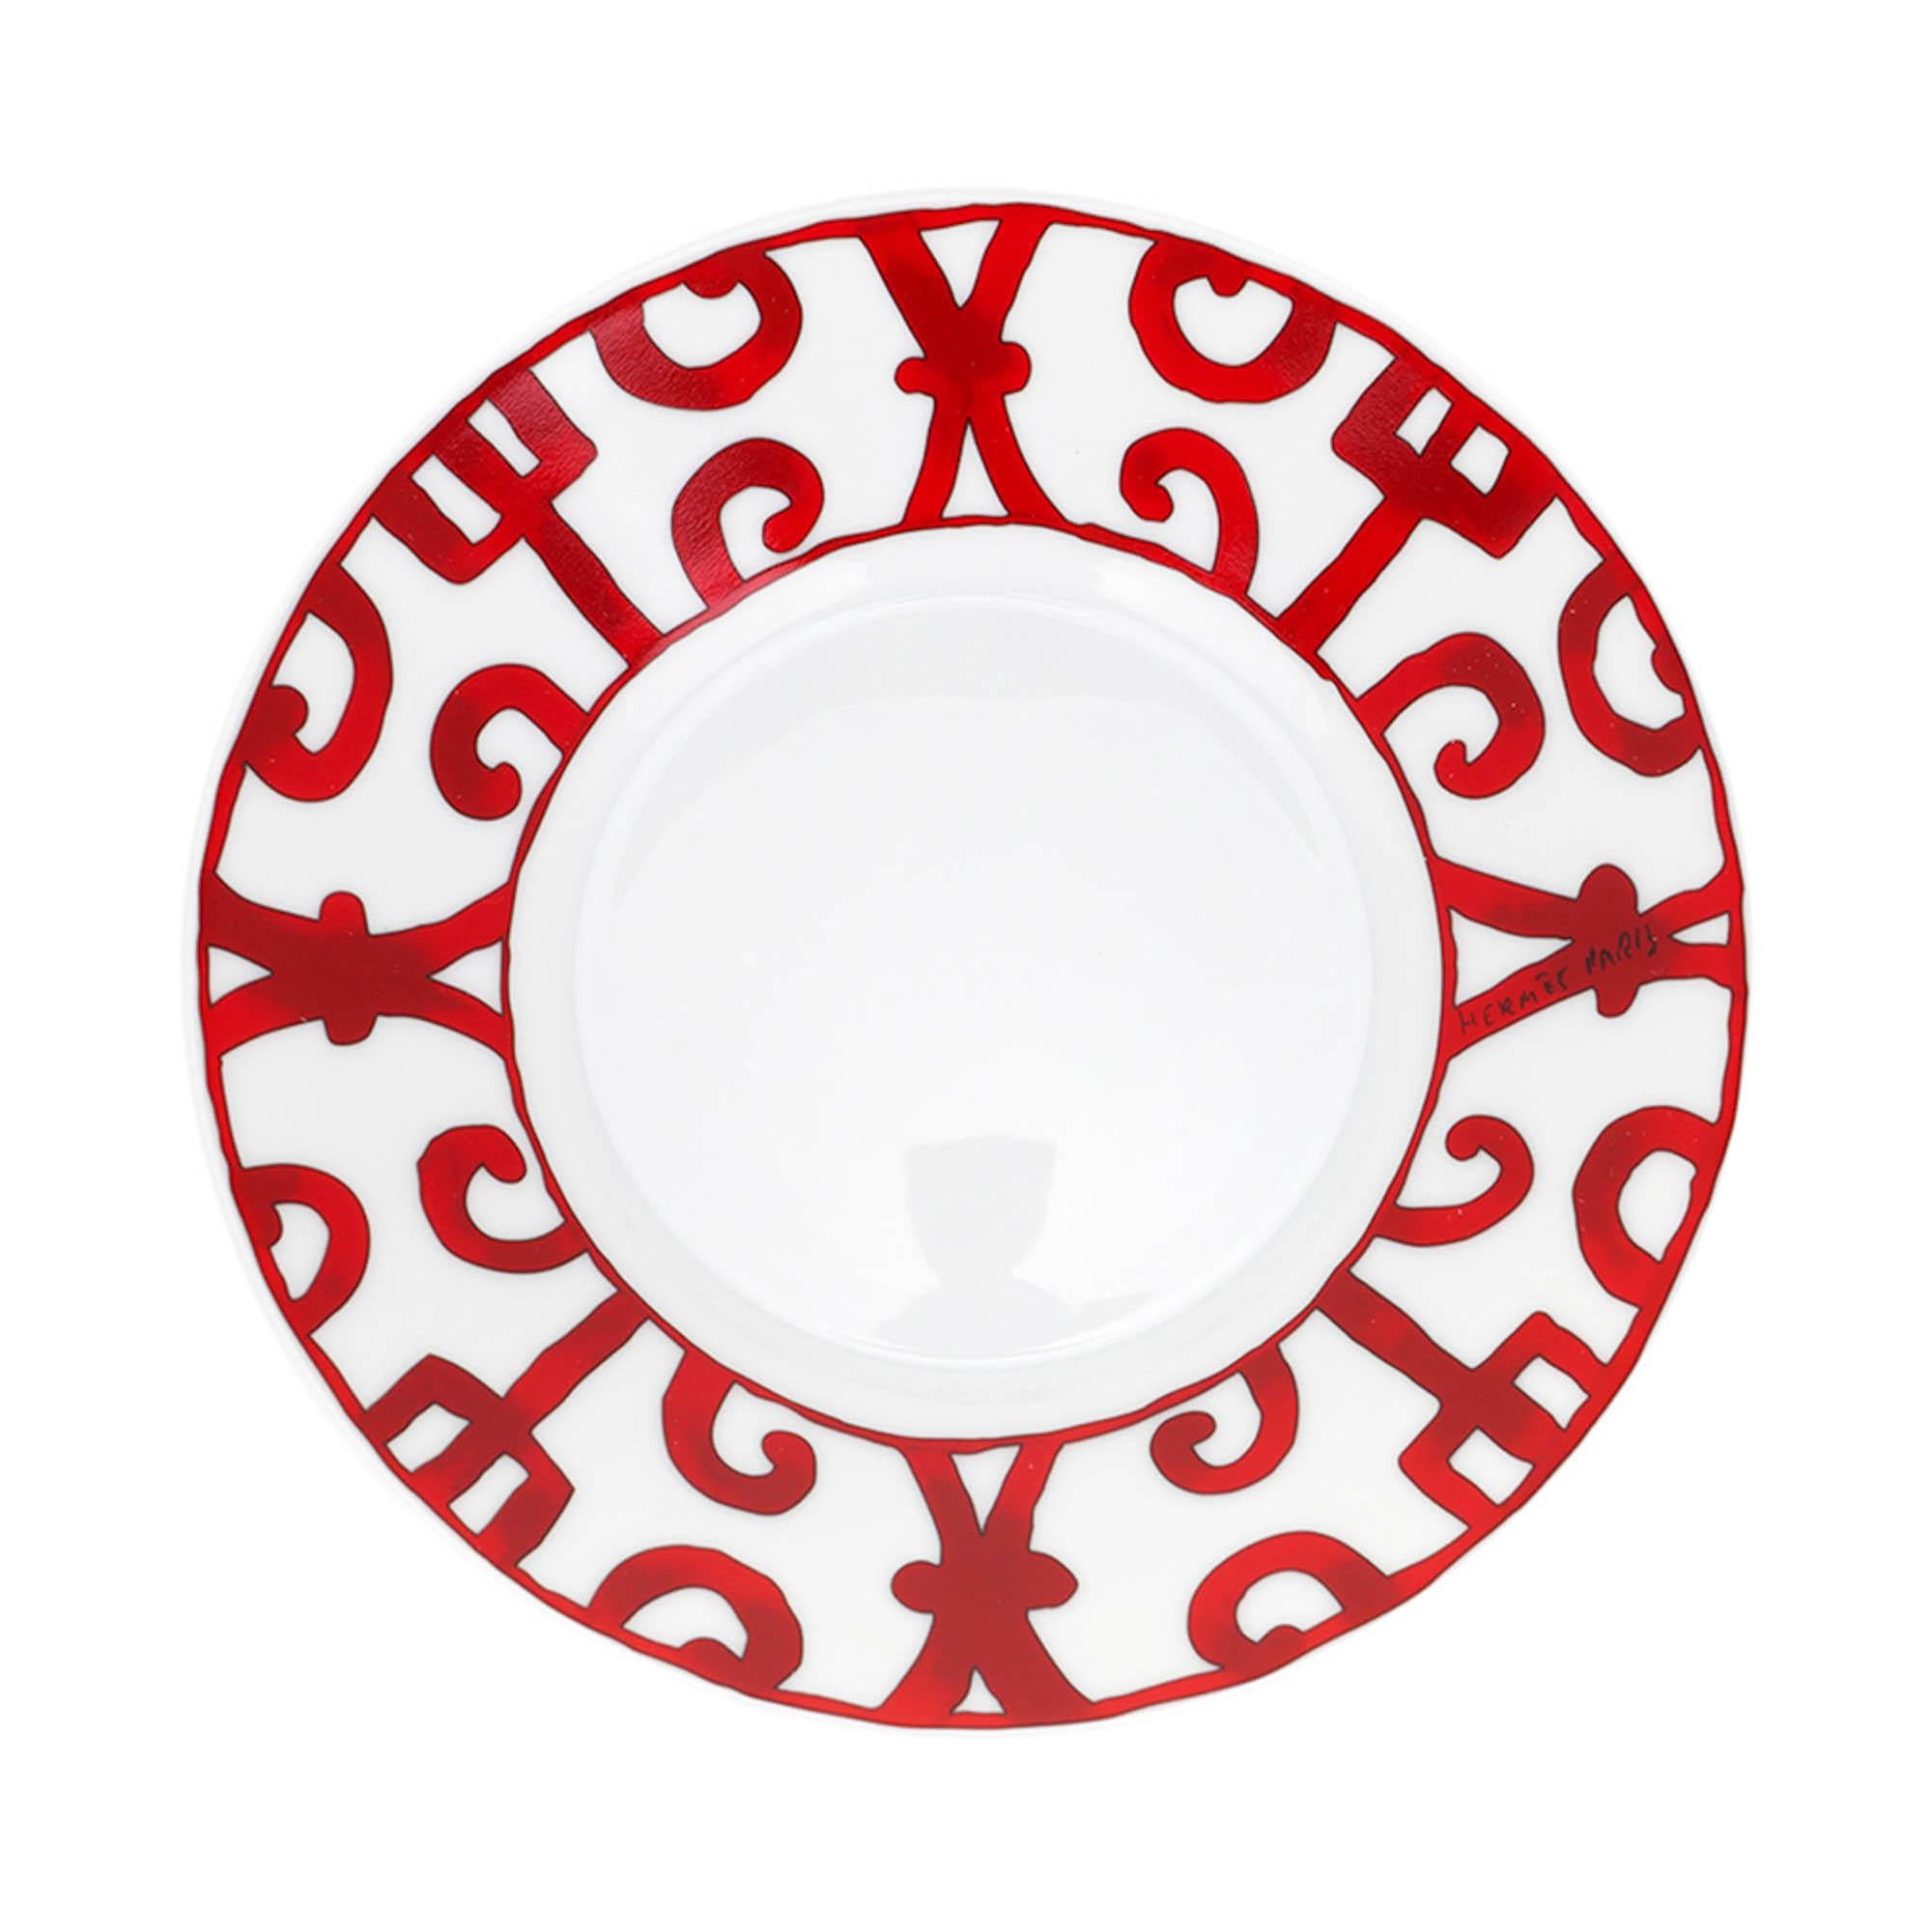 Mightychic bietet eine Hermes Balcon de Guadalquivir Frühstückstasse und Untertasse in Rot und Weiß Set von zwei.
Gönnen Sie sich einen Moment der Ruhe, um die Schönheit und Freude des Porzellans von Balcon de Guadalquivir zu erleben.
Schönes